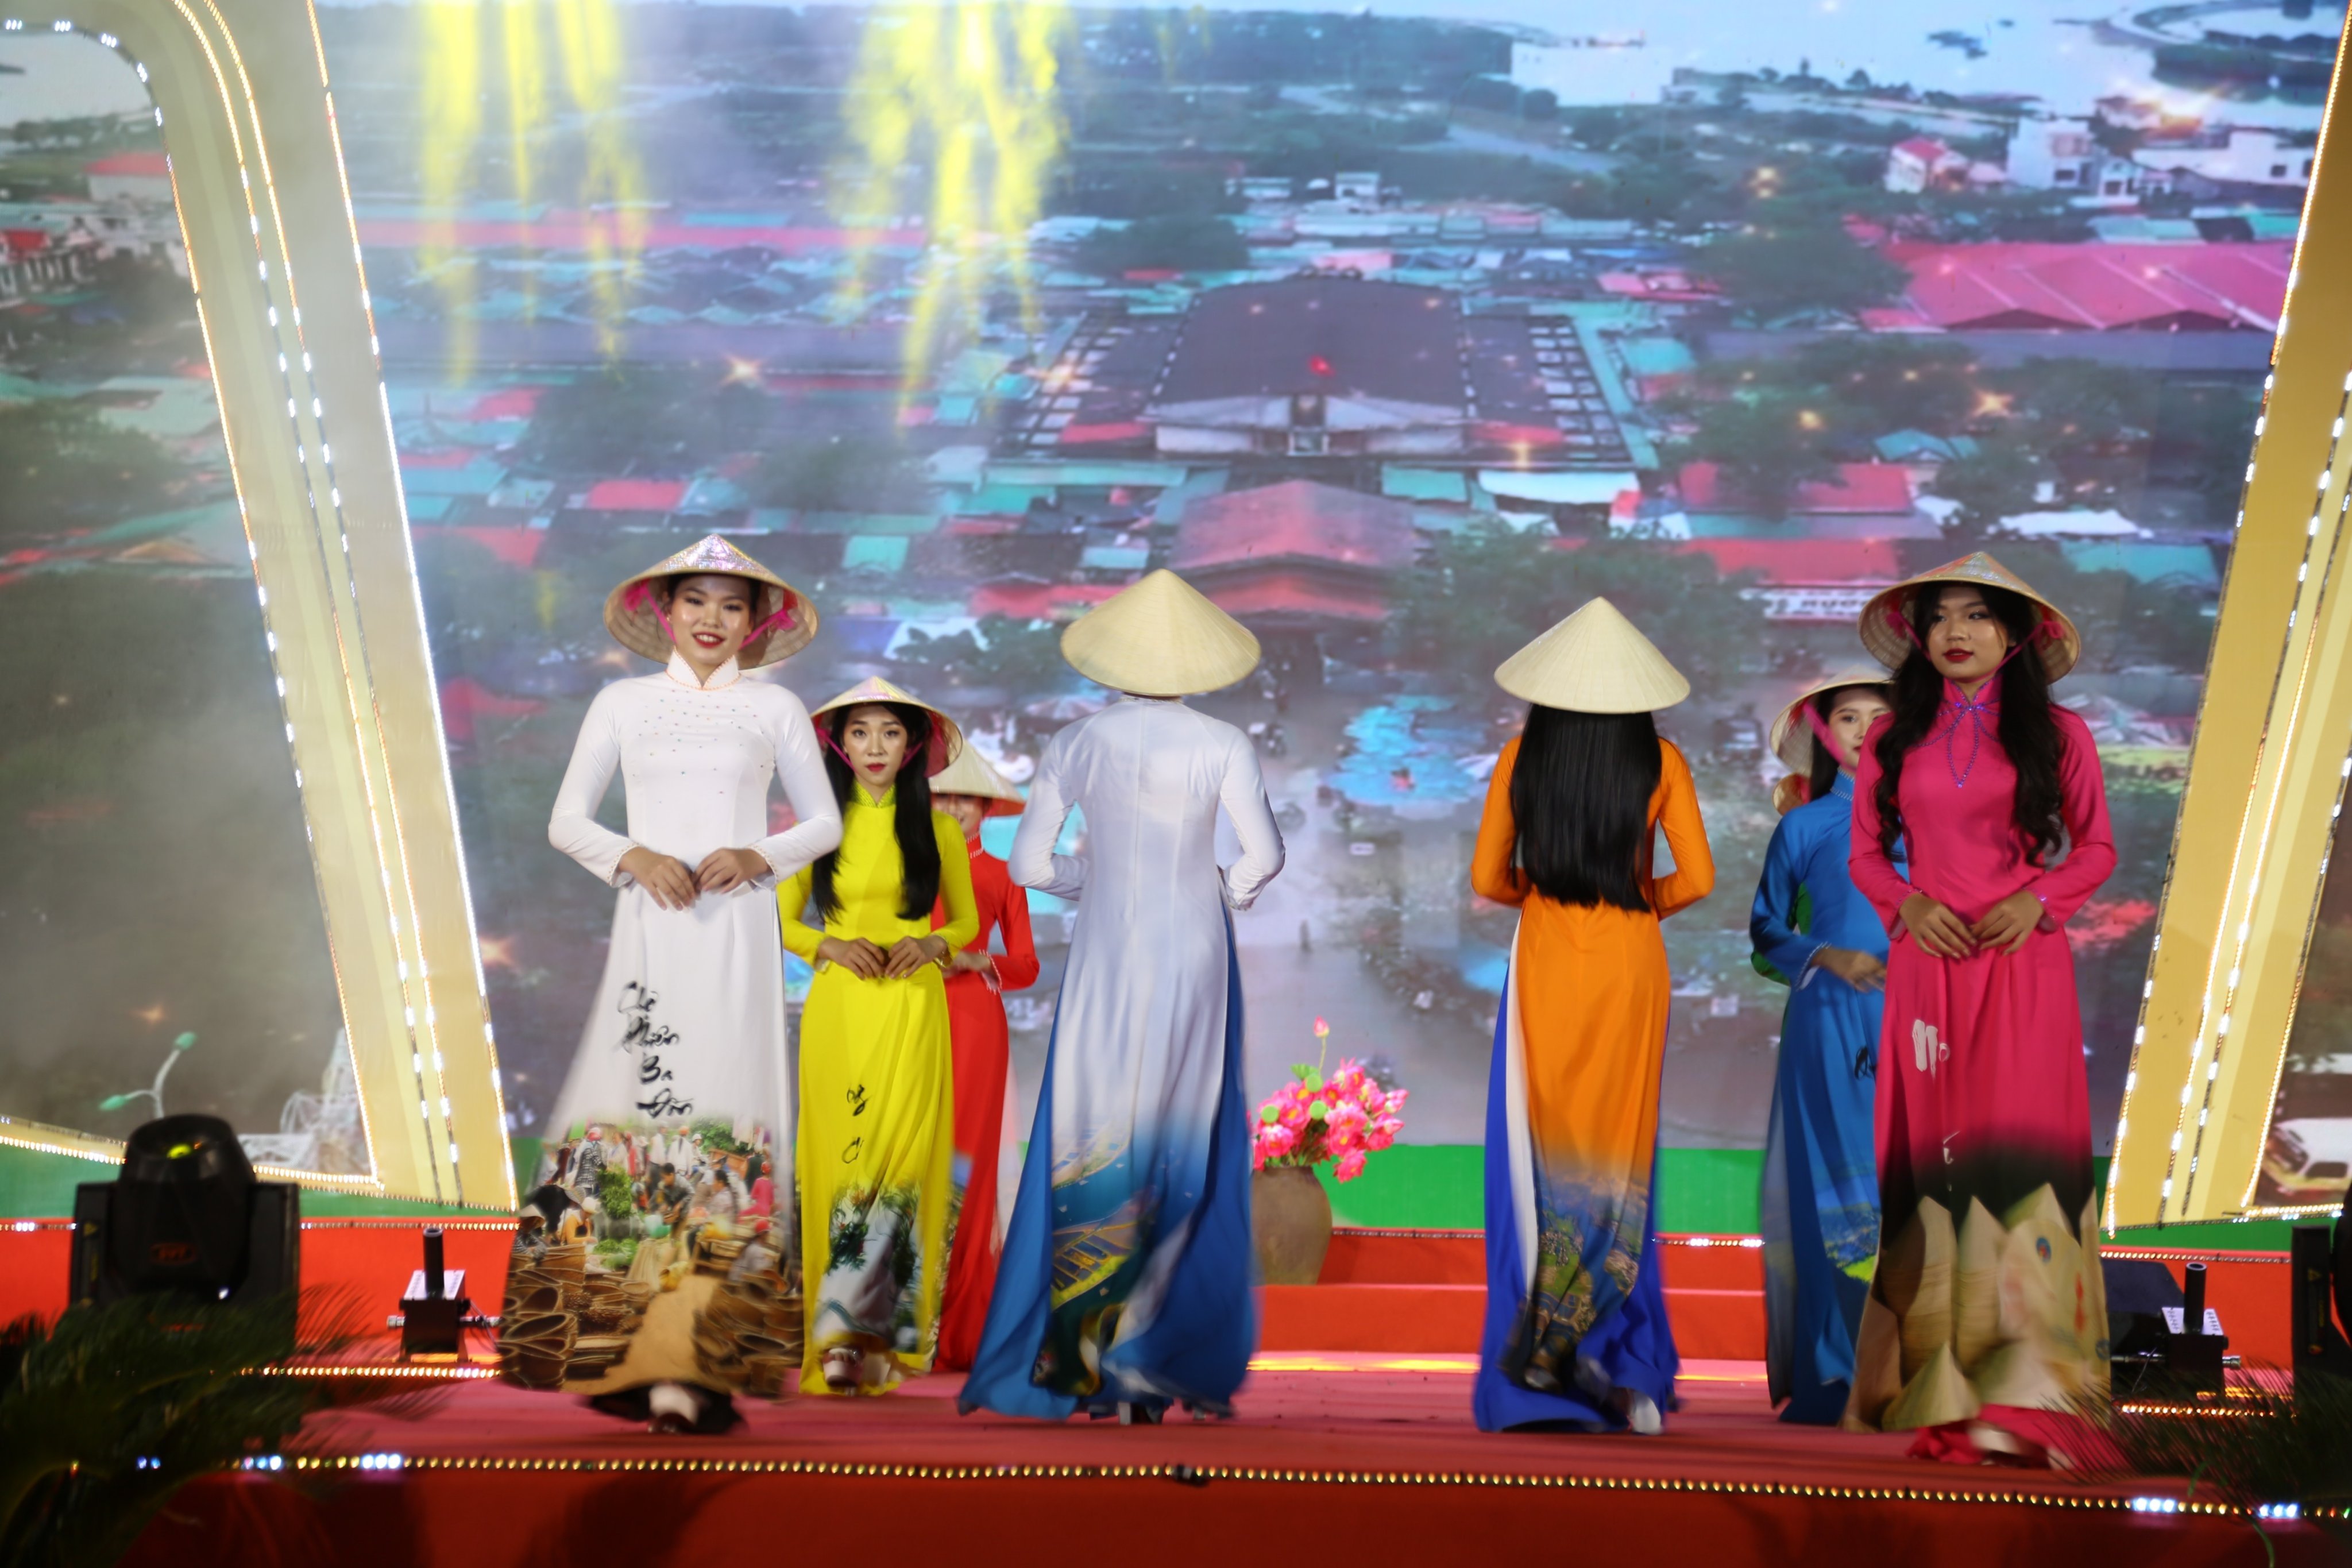 Văn hoá - Hơn 500 phụ nữ trình diễn áo dài giữa lòng di sản Phong Nha - Kẻ Bàng (Hình 3).